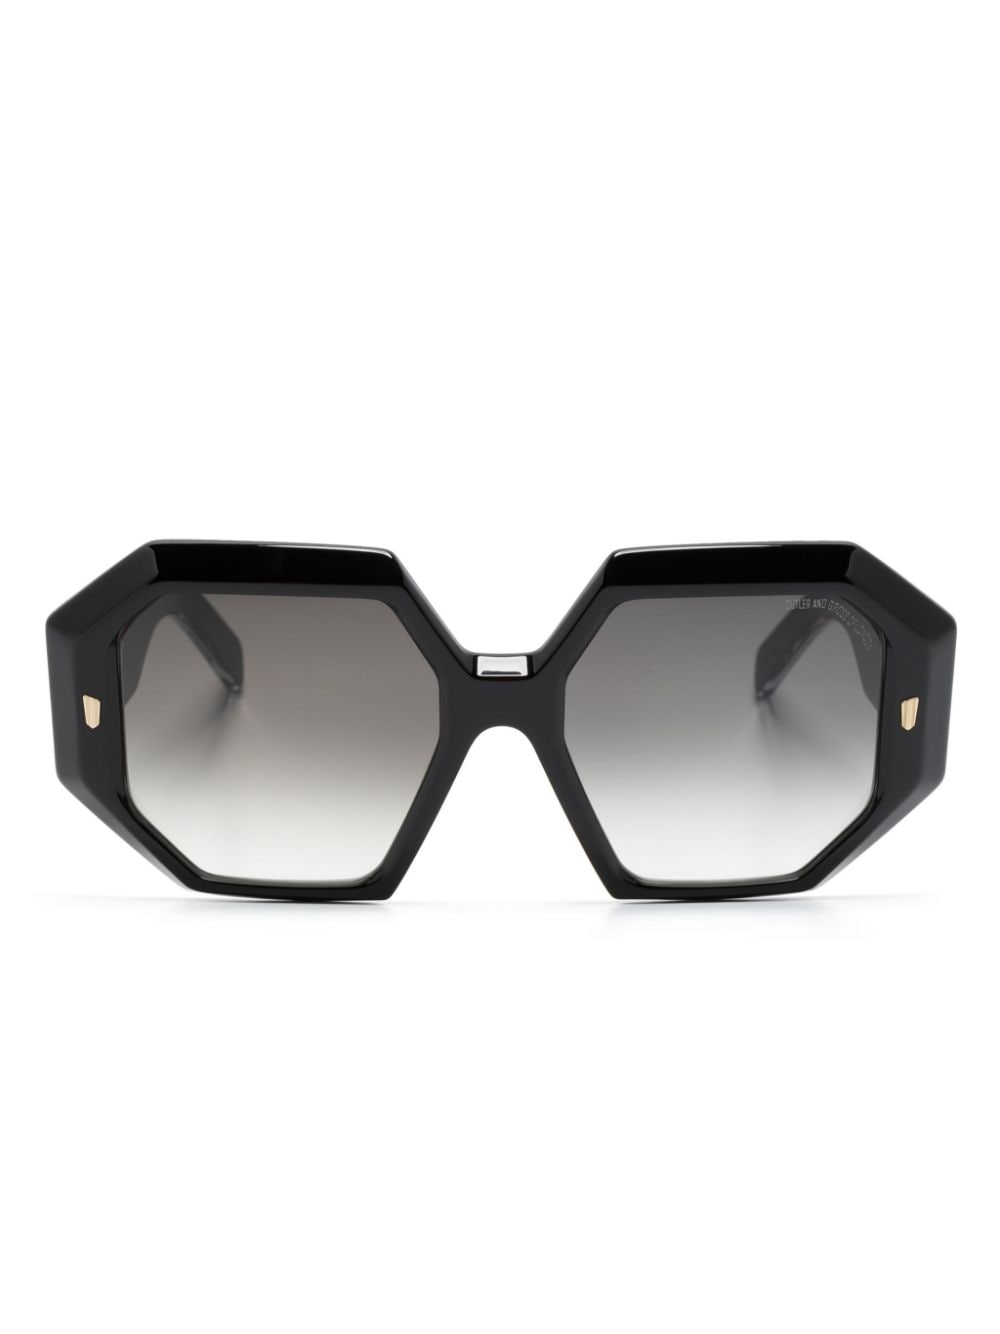 Cutler & Gross 9324 oversize-frame sunglasses - Black von Cutler & Gross